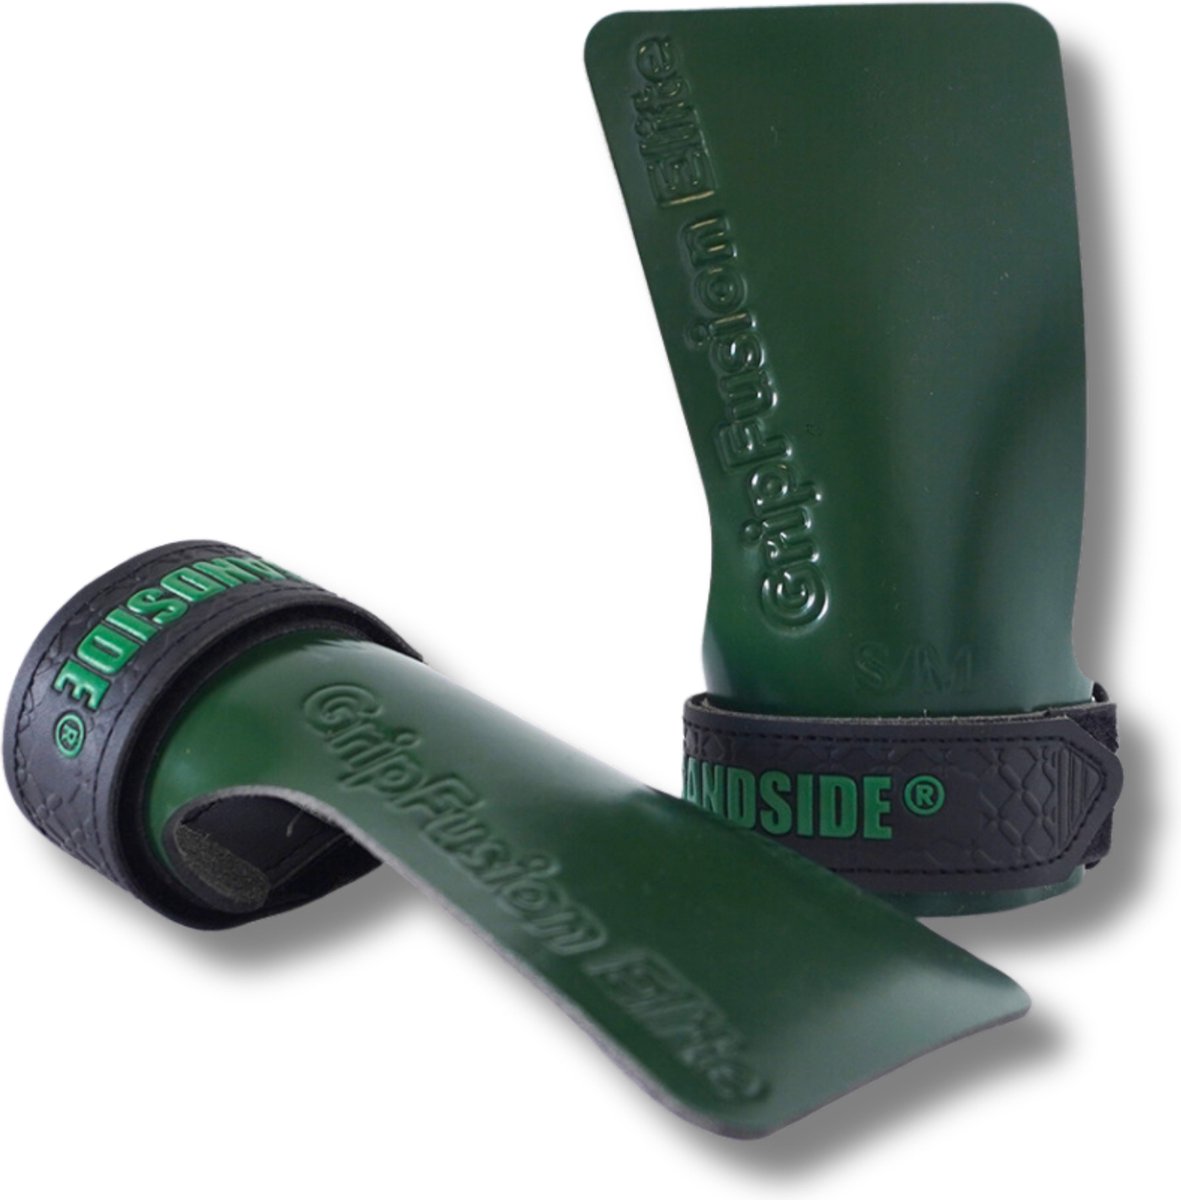 Sandside - CrossFit Grips Elite 2.0 - Sticky Hand Grips - No Chalk - Fitness Handschoenen - Fingerless Grips - Army Green L/XL